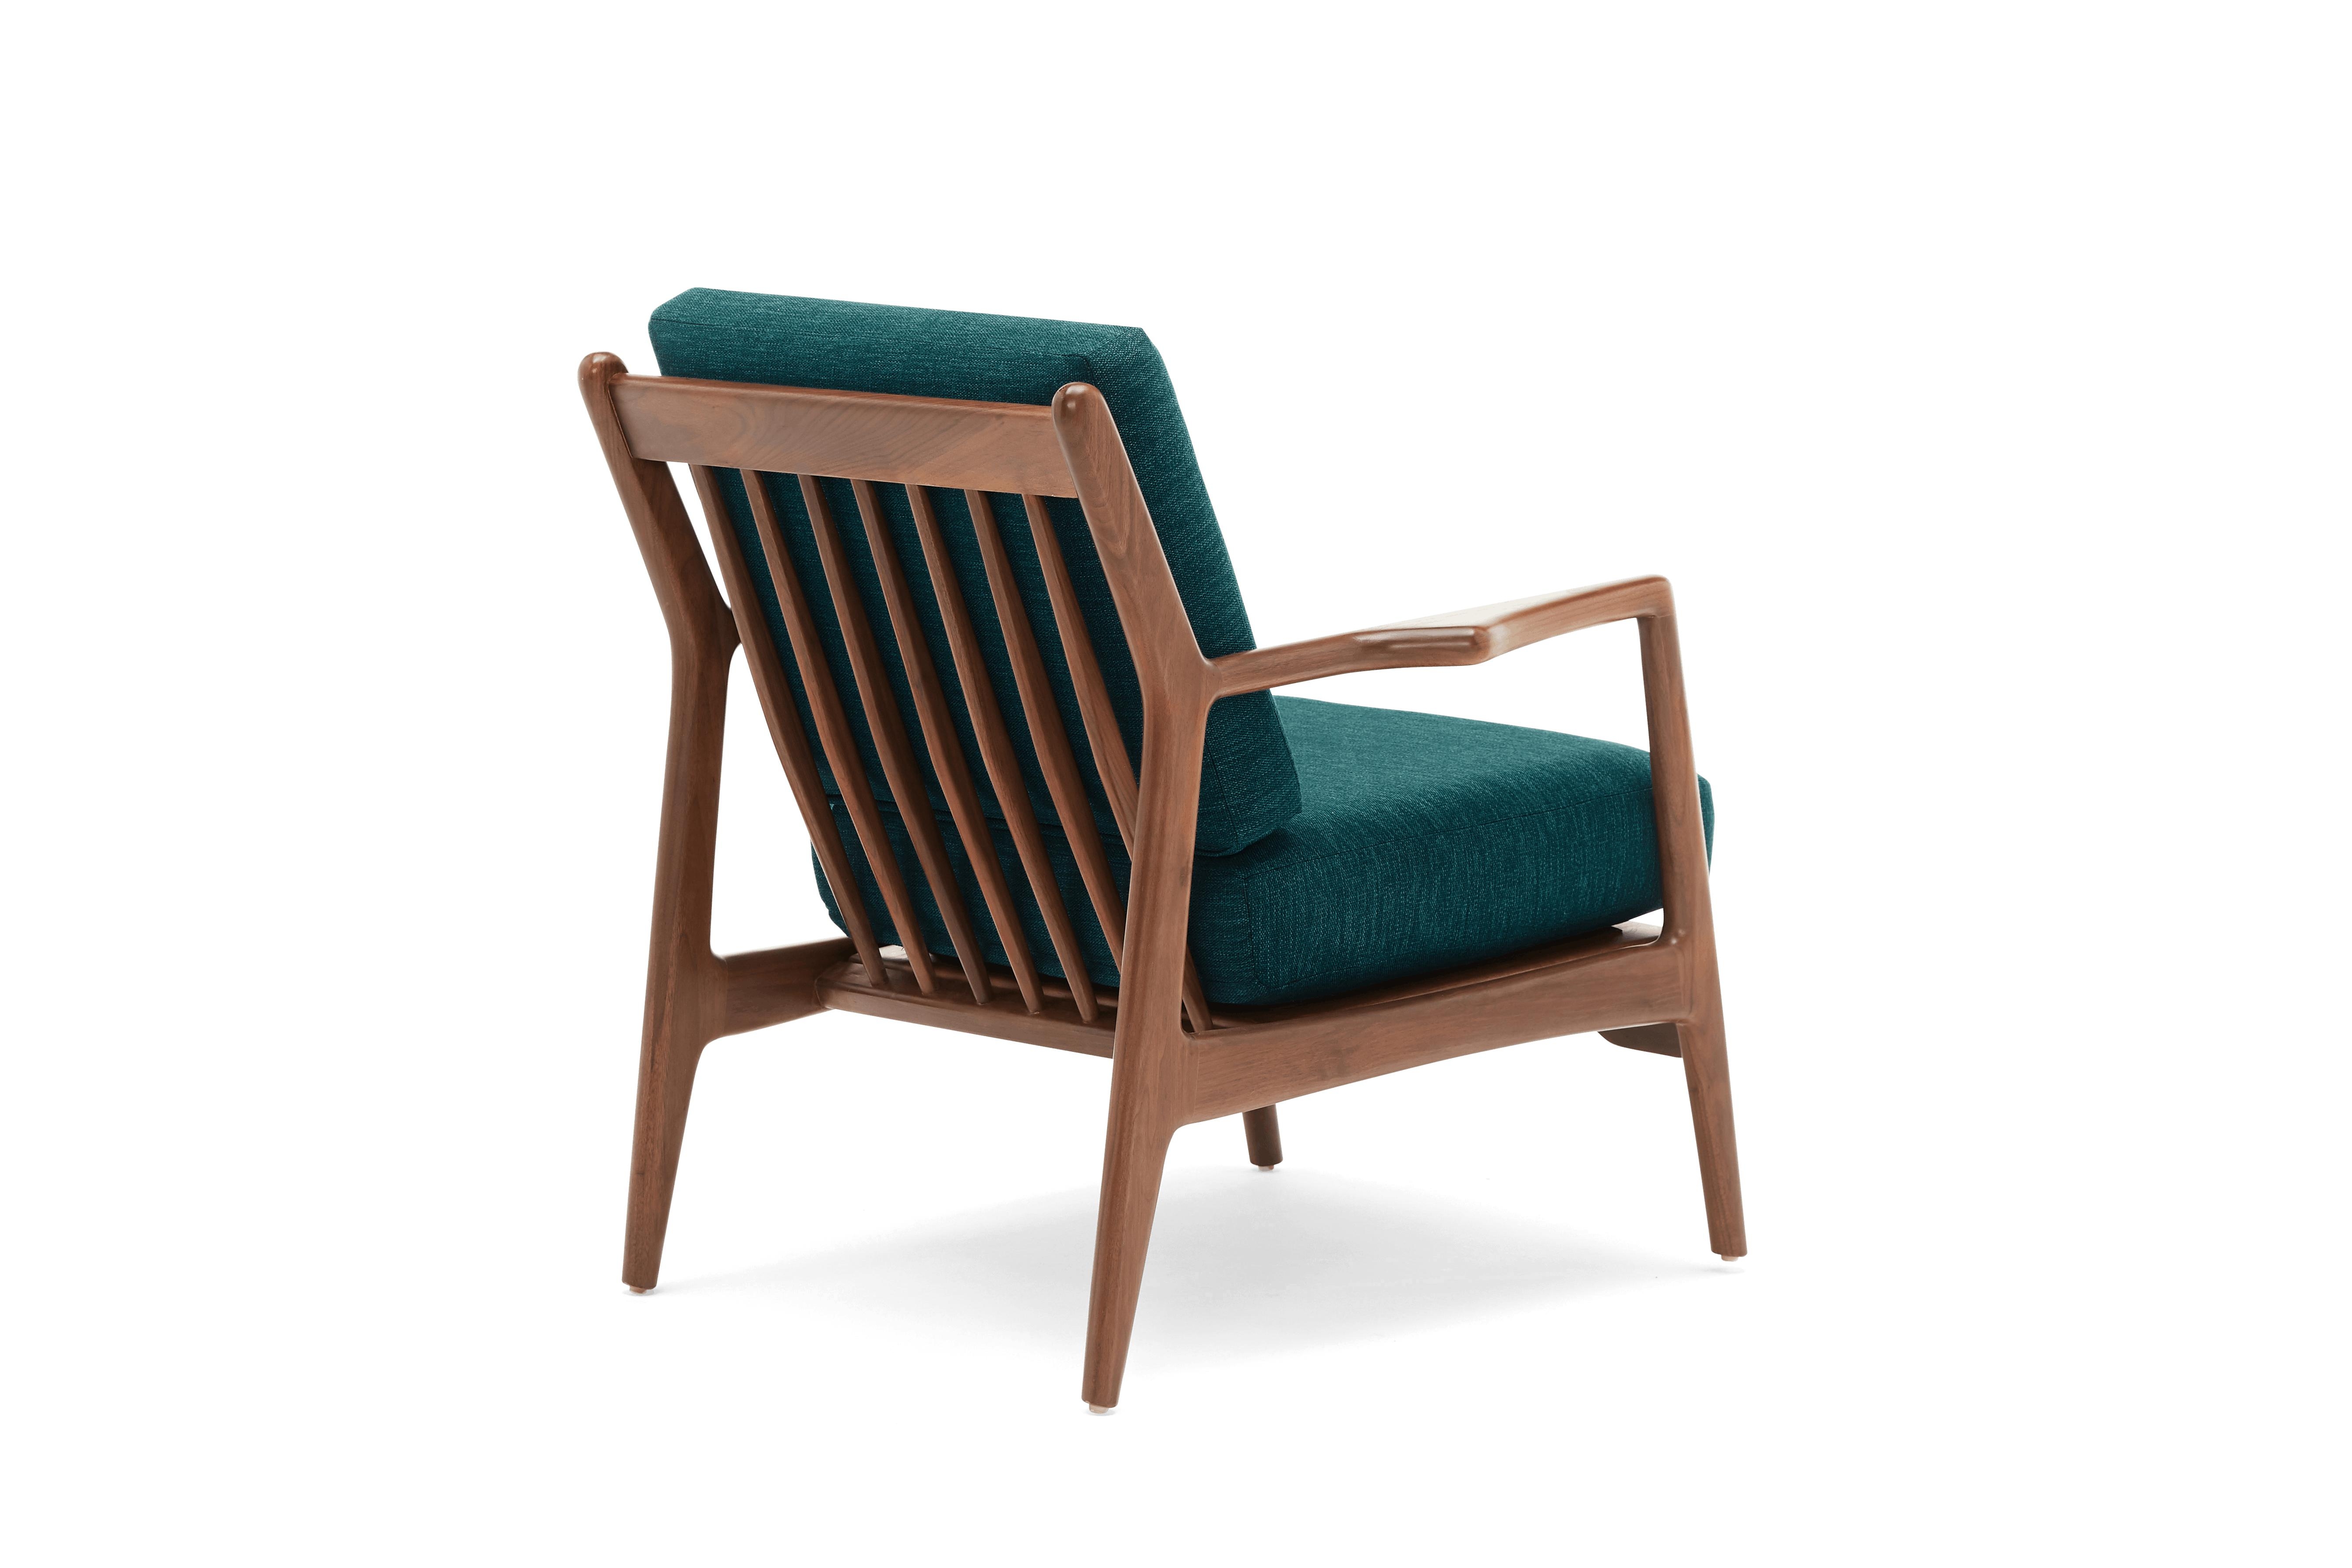 Blue Collins Mid Century Modern Chair - Key Largo Zenith Teal - Walnut - Image 3